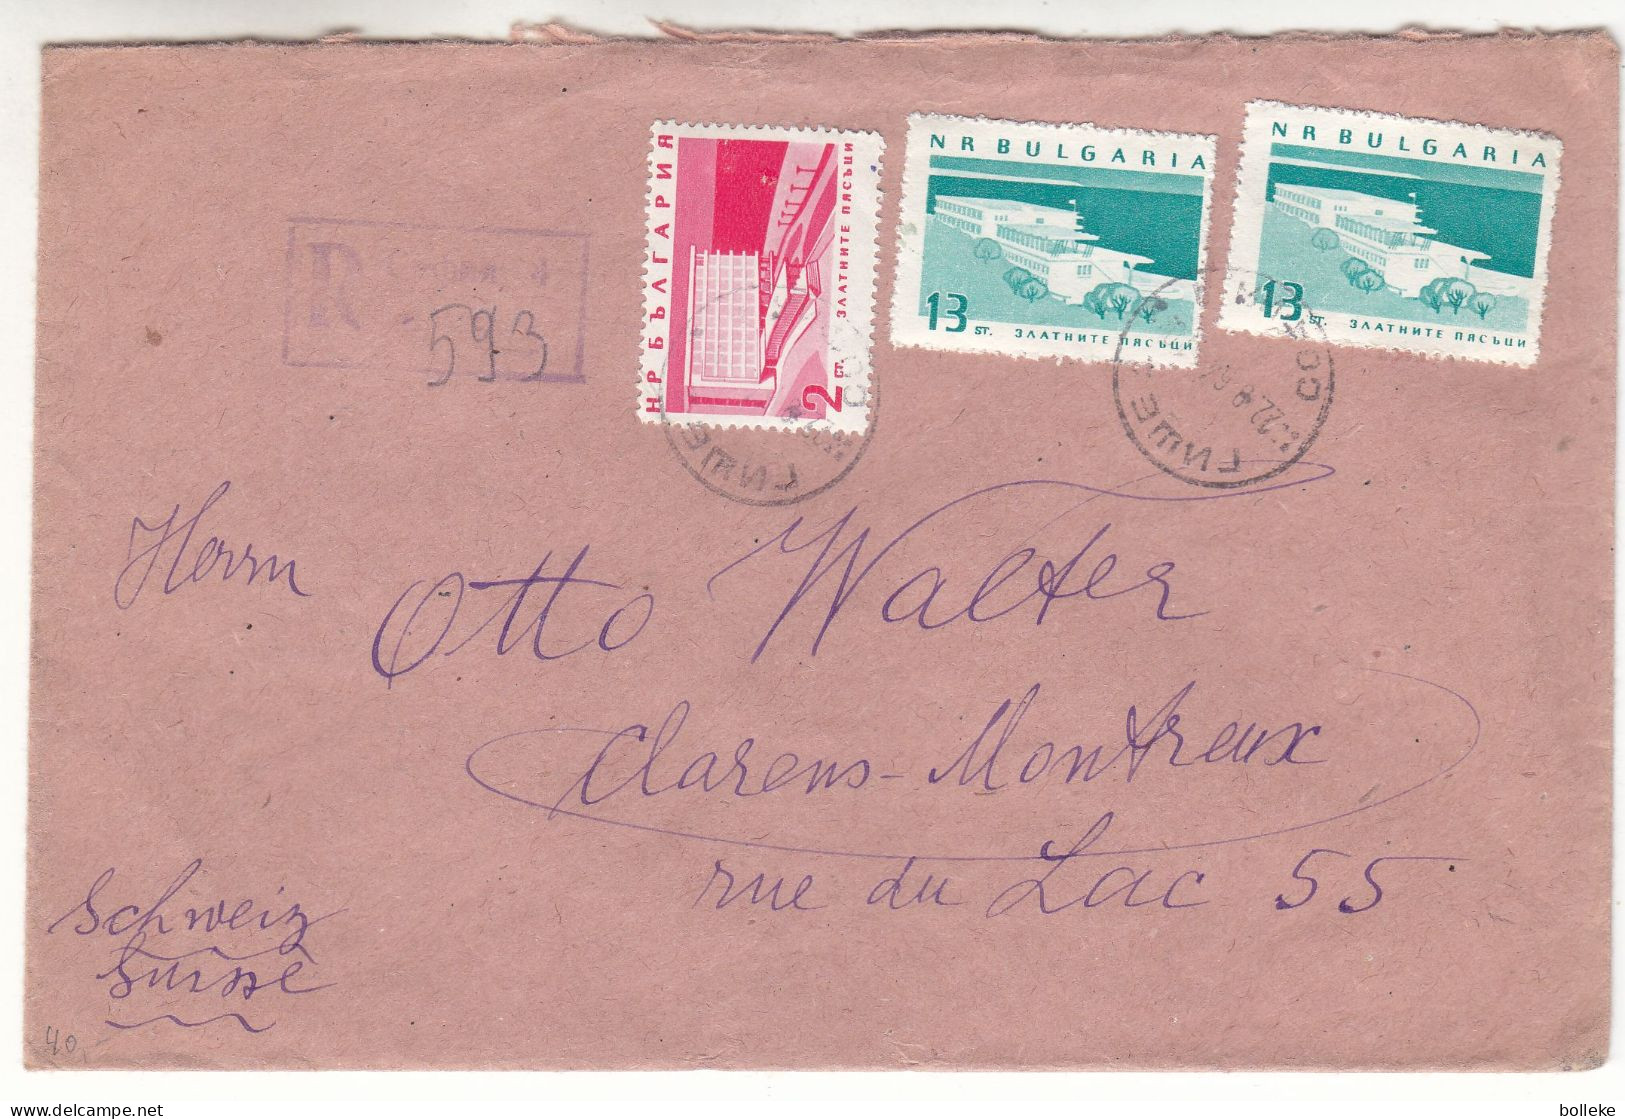 Bulgarie - Lettre Recom De 1964 - Oblit Sofia - Exp Vers Clarens Montreux - - Covers & Documents